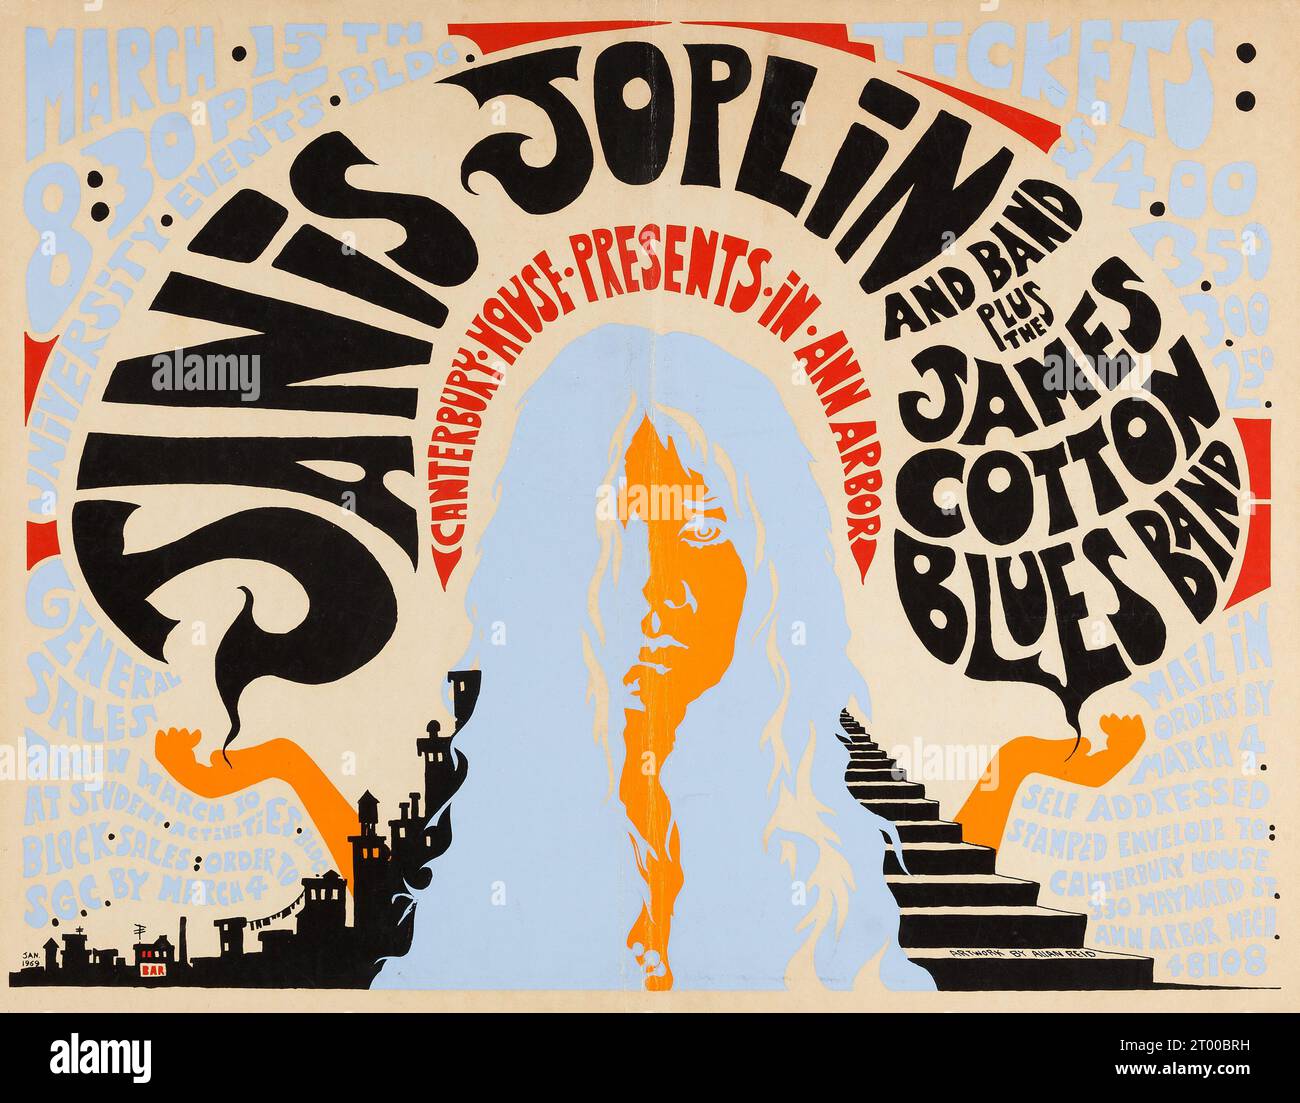 Janis Joplin, 1965-70 | Posters, Art Prints, Wall Murals | +250 000 motifs